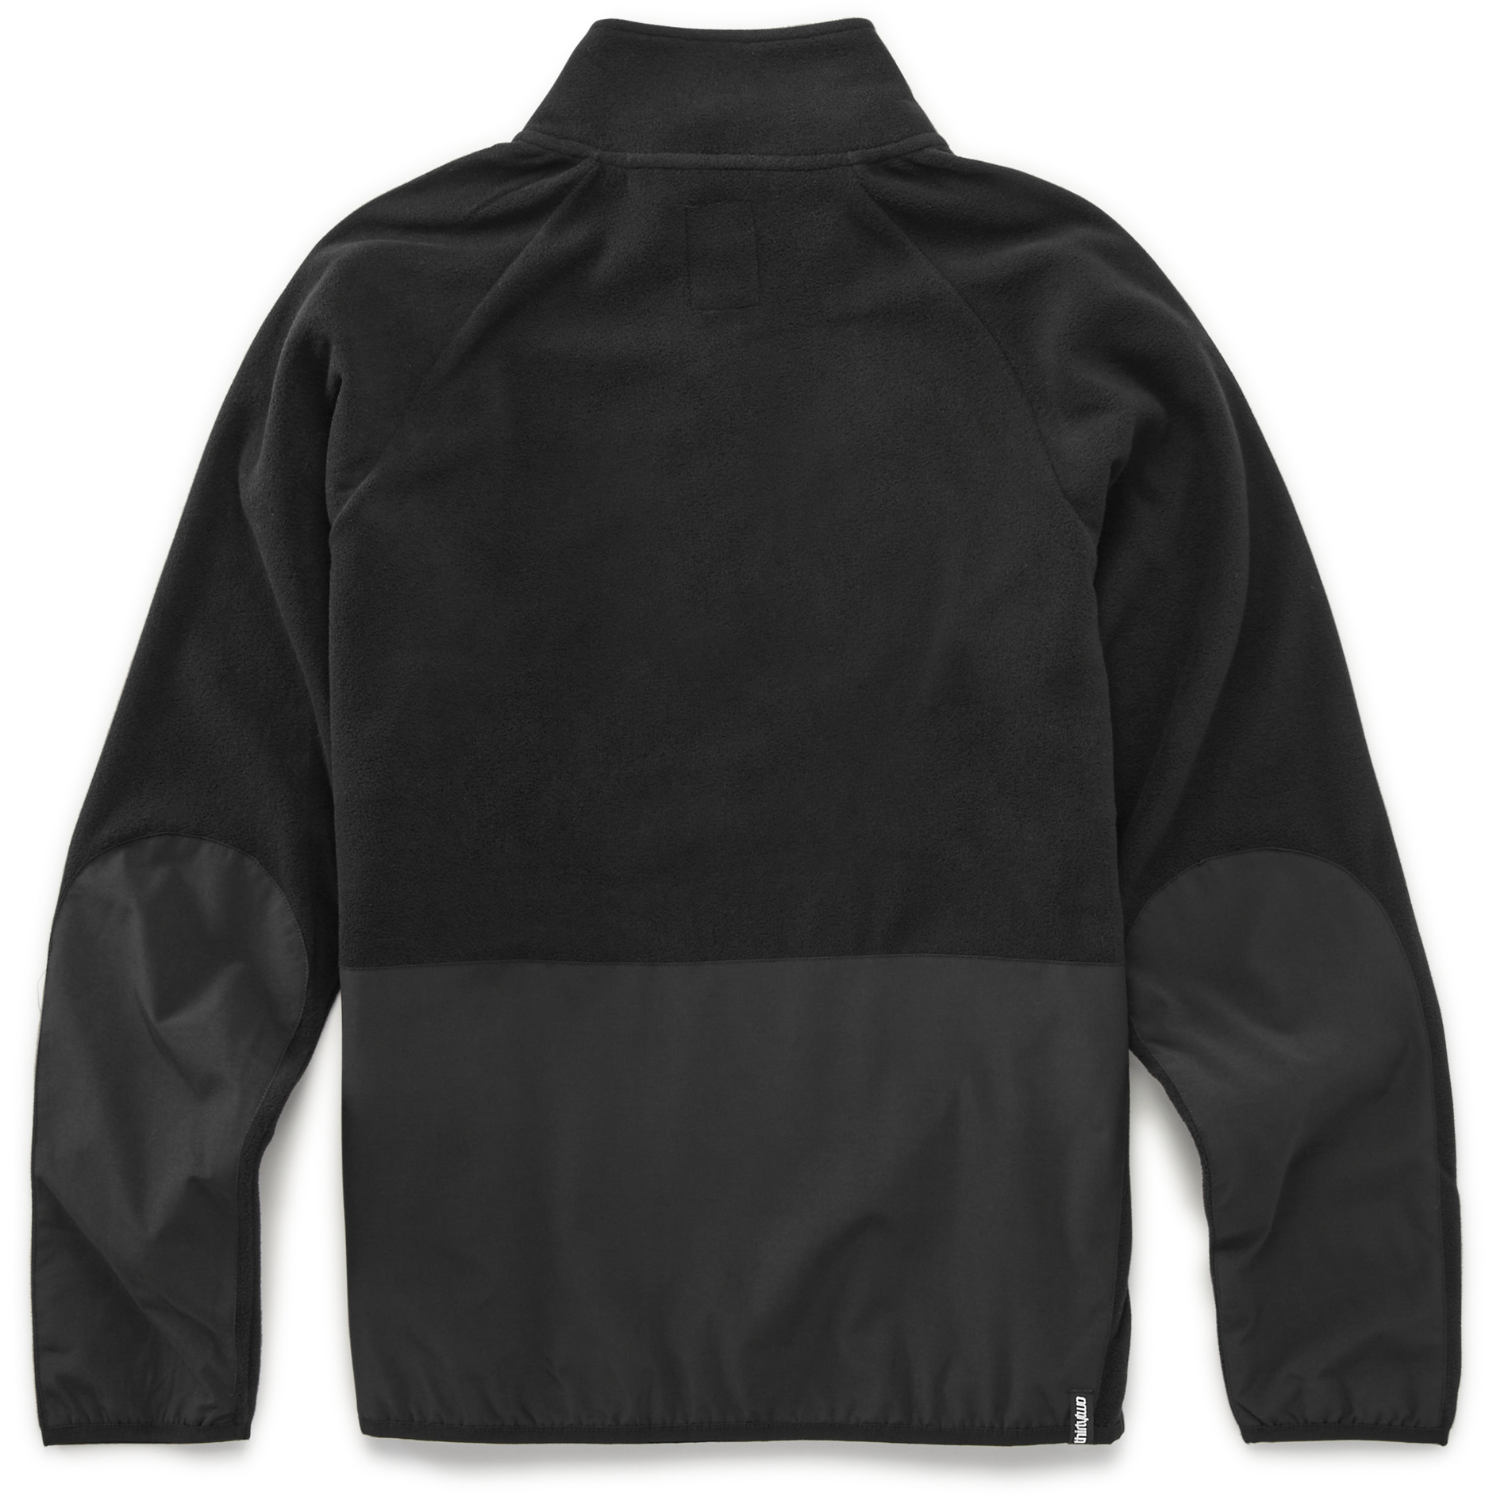 Men's Fleece Jackets For Sale - Cozy & Stylish Outerwear